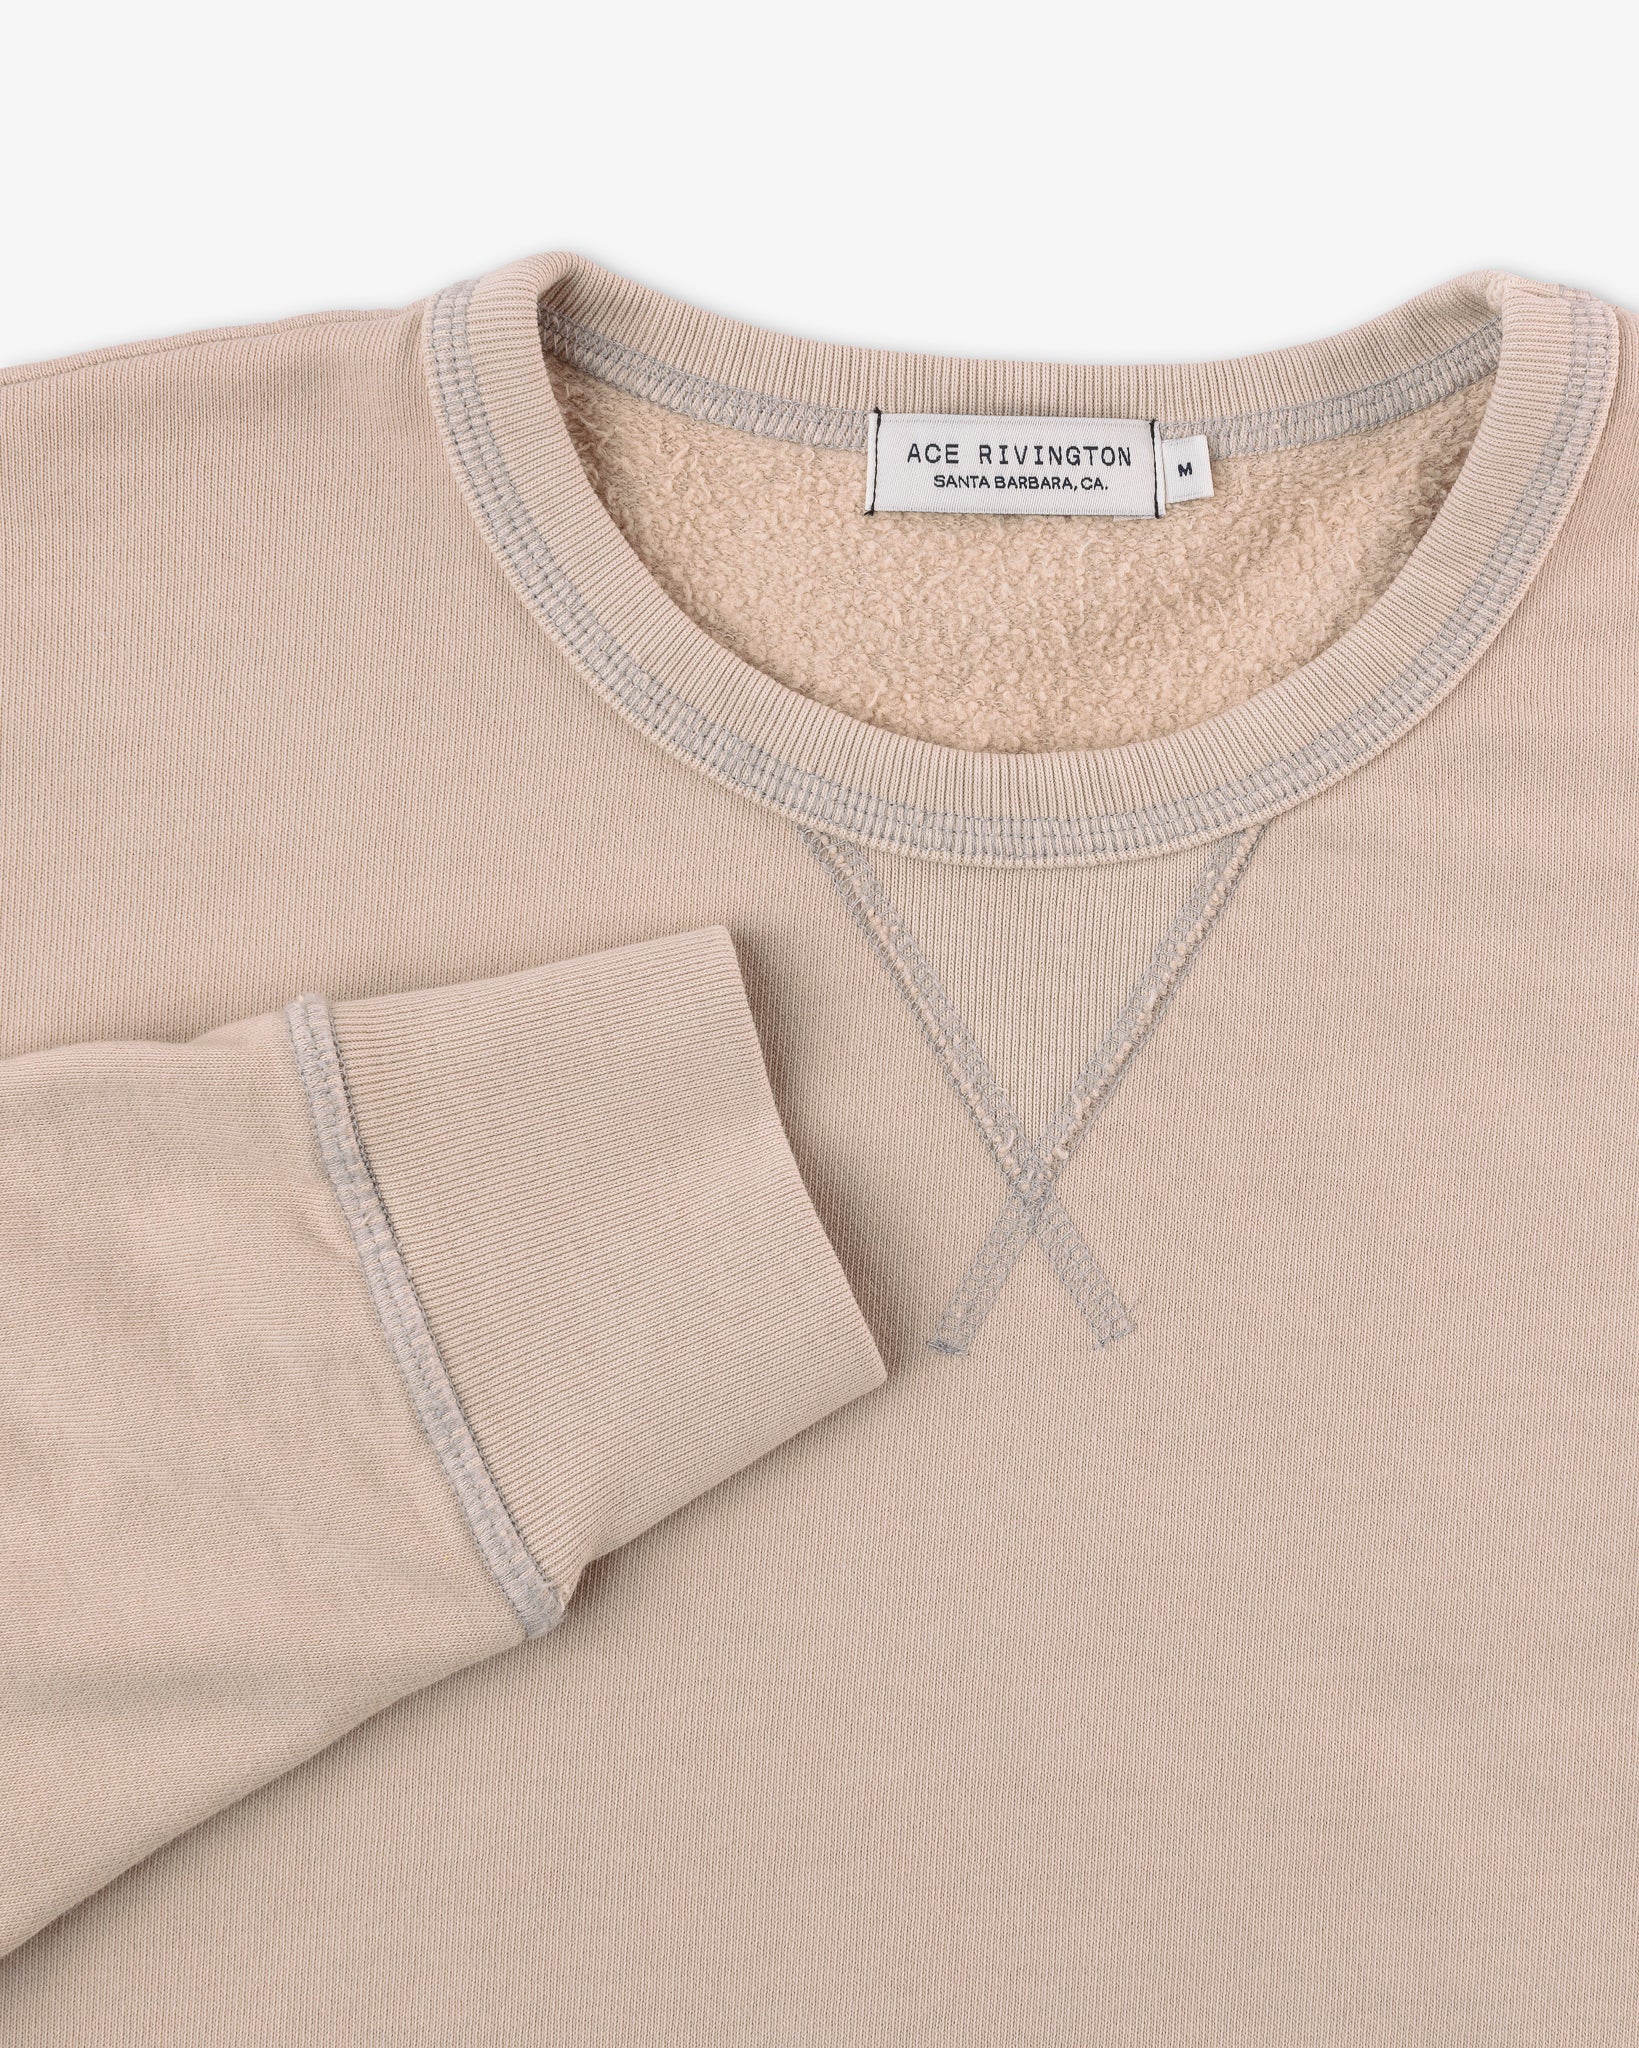 right sleeve set near collar of organic cotton sweatshirt in light khaki